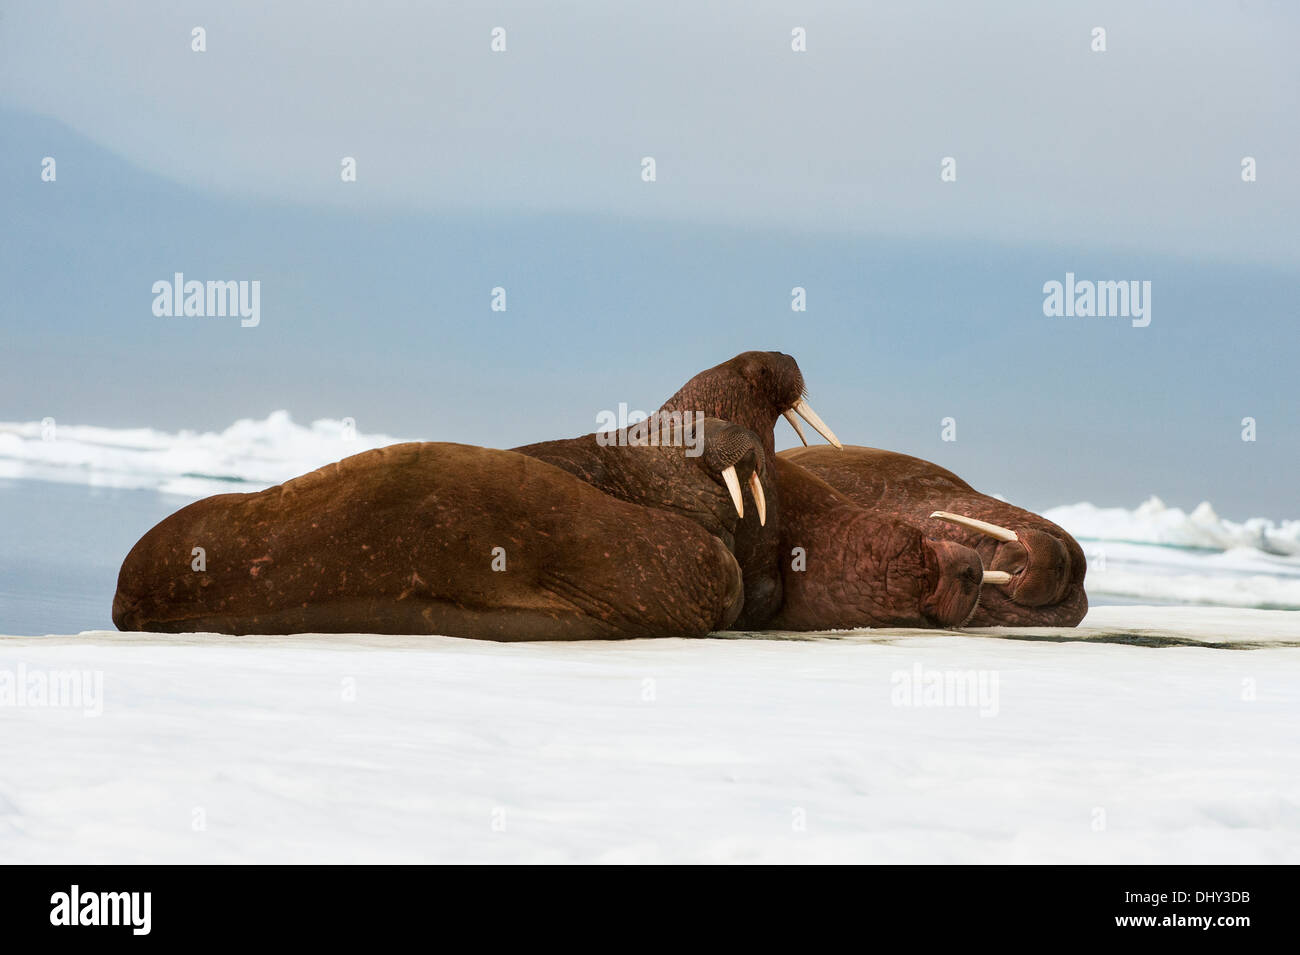 Le morse (Odobenus rosmarus), l'île Wrangel, Chuckchi Mer, Tchoukotka, Extrême-Orient russe Banque D'Images